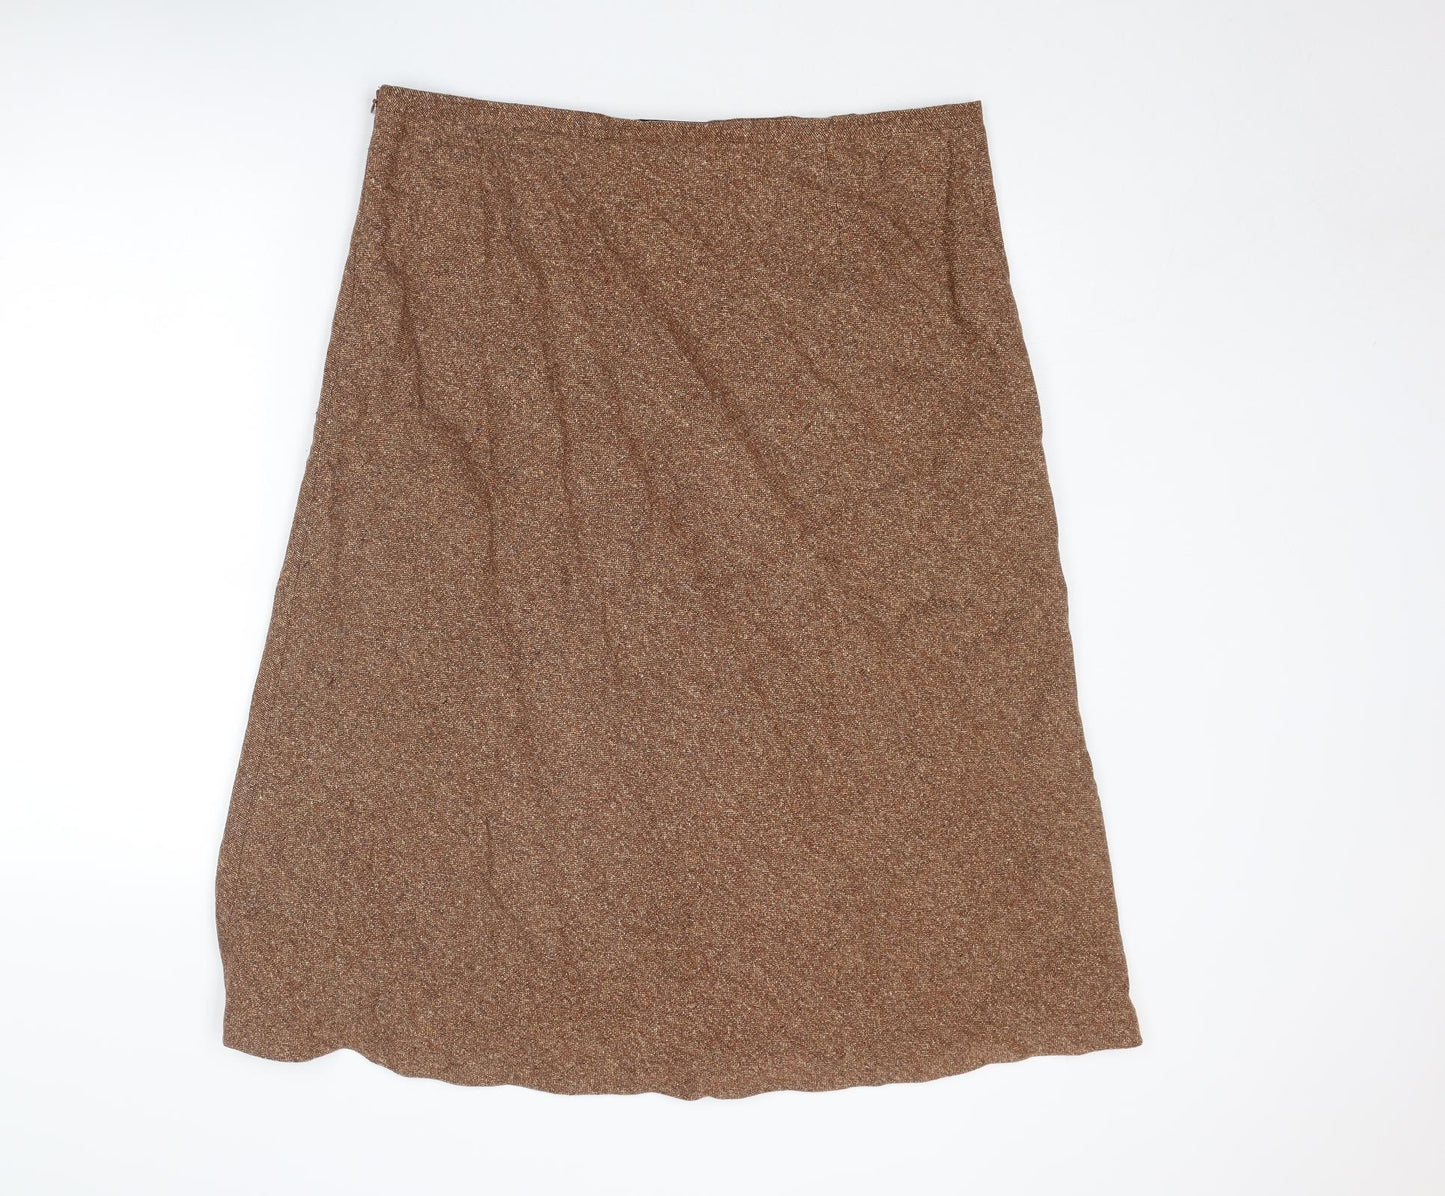 Artigiano Womens Brown Wool Swing Skirt Size 20 Zip